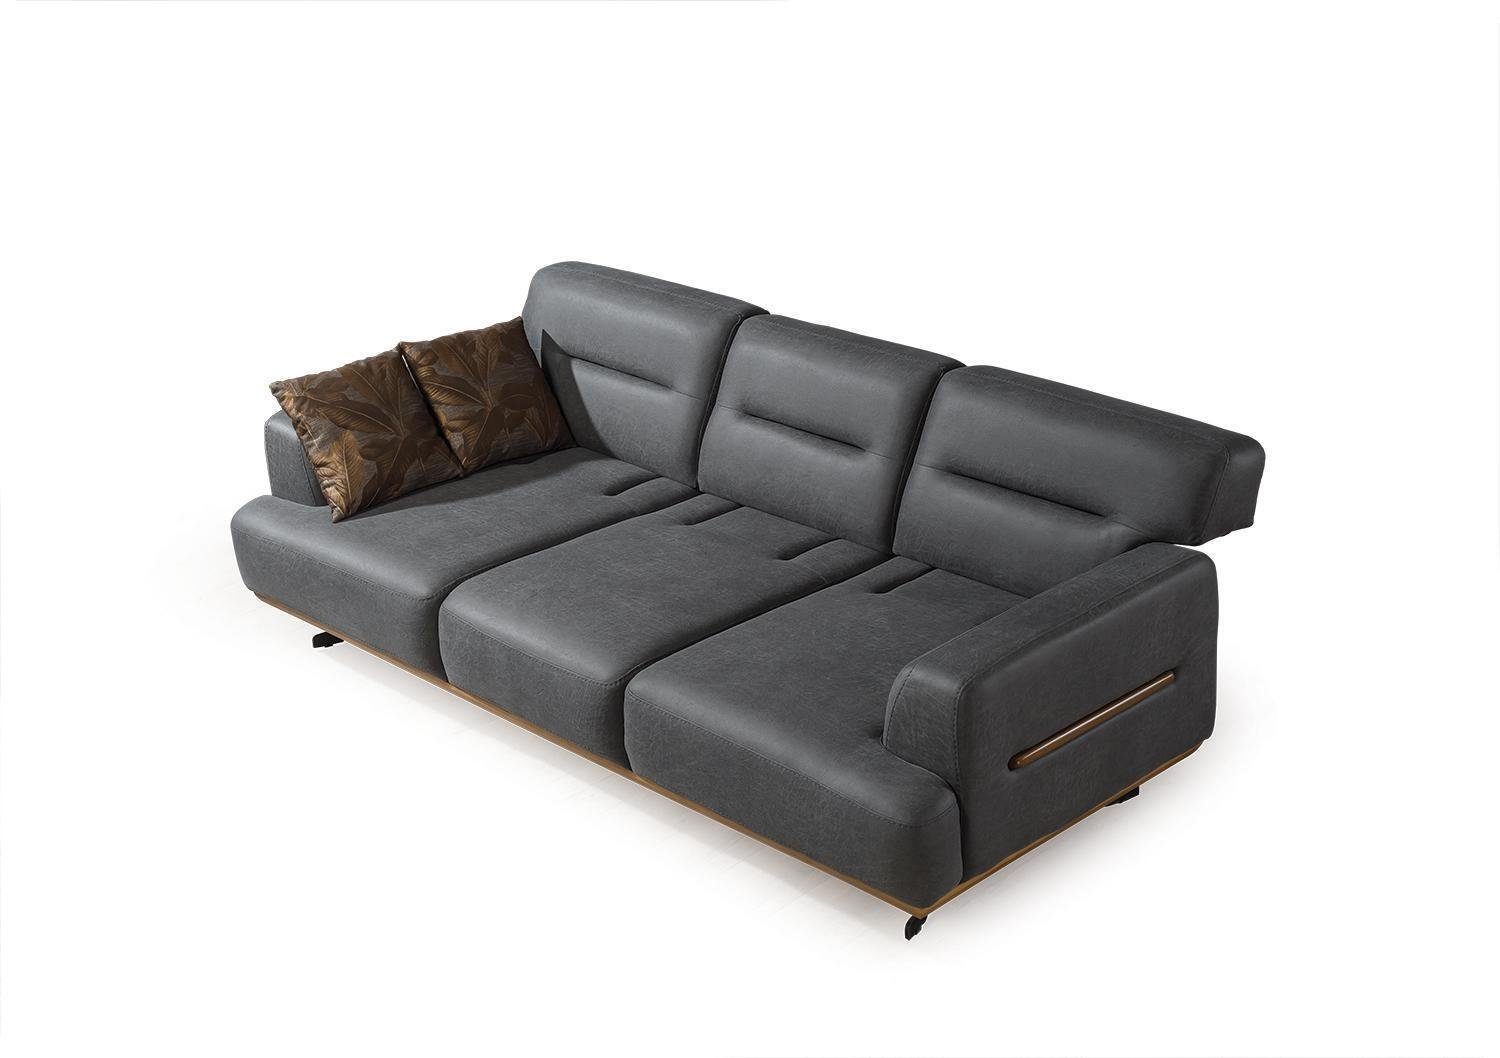 Luxus 3-Sitzer 3 JVmoebel Teile, Design 1 Europa Stil Sitzer Sofa Italienische Couch Made in Möbel, Wohnzimmer